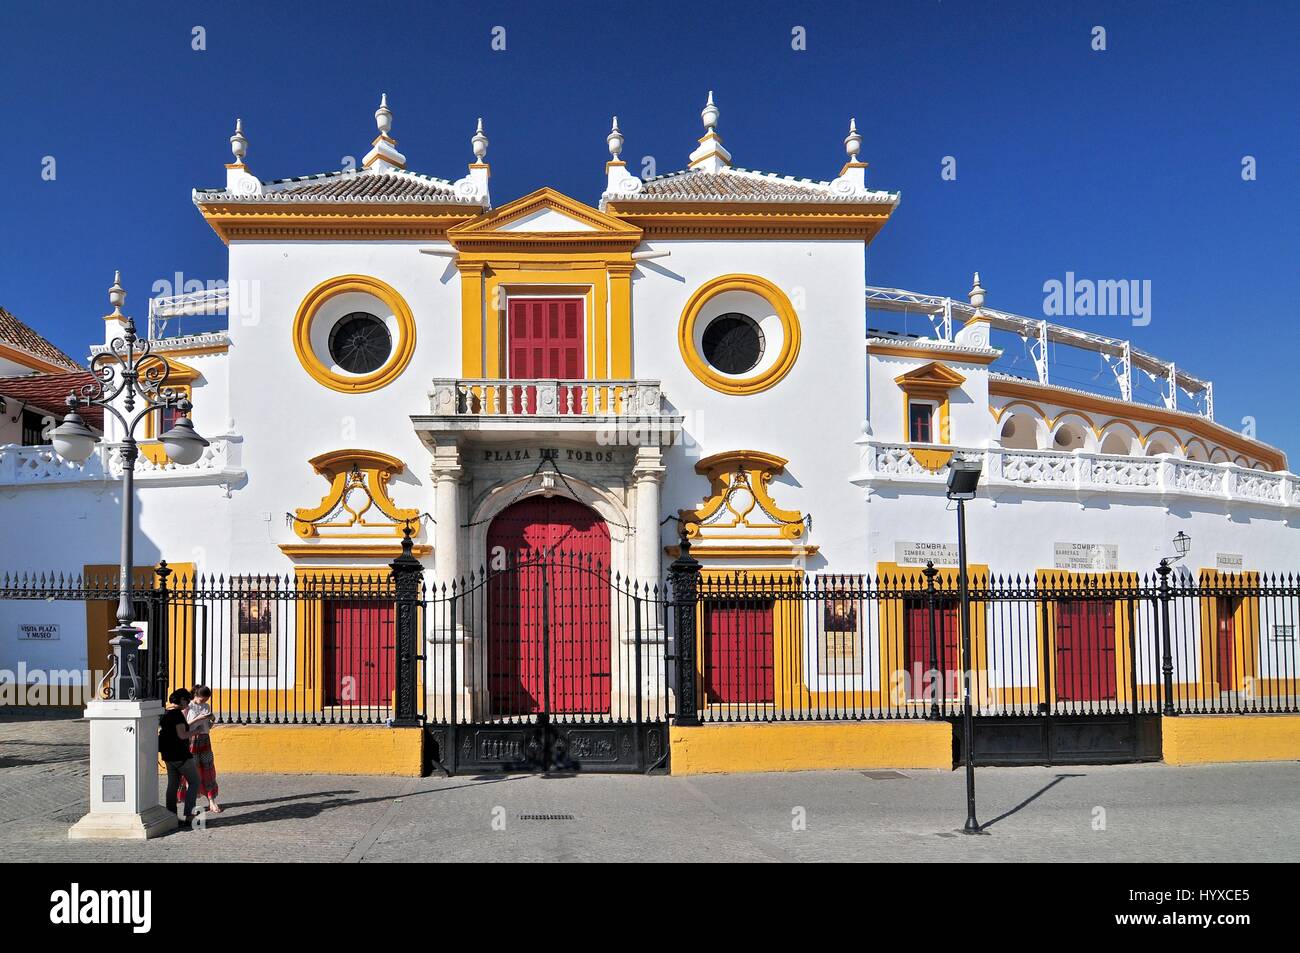 Spain, Andalusia, Sevilla, Plaza de Toros de la Real Maestranza de Caballeria de Sevilla, the Baroque facade of the bullring Stock Photo